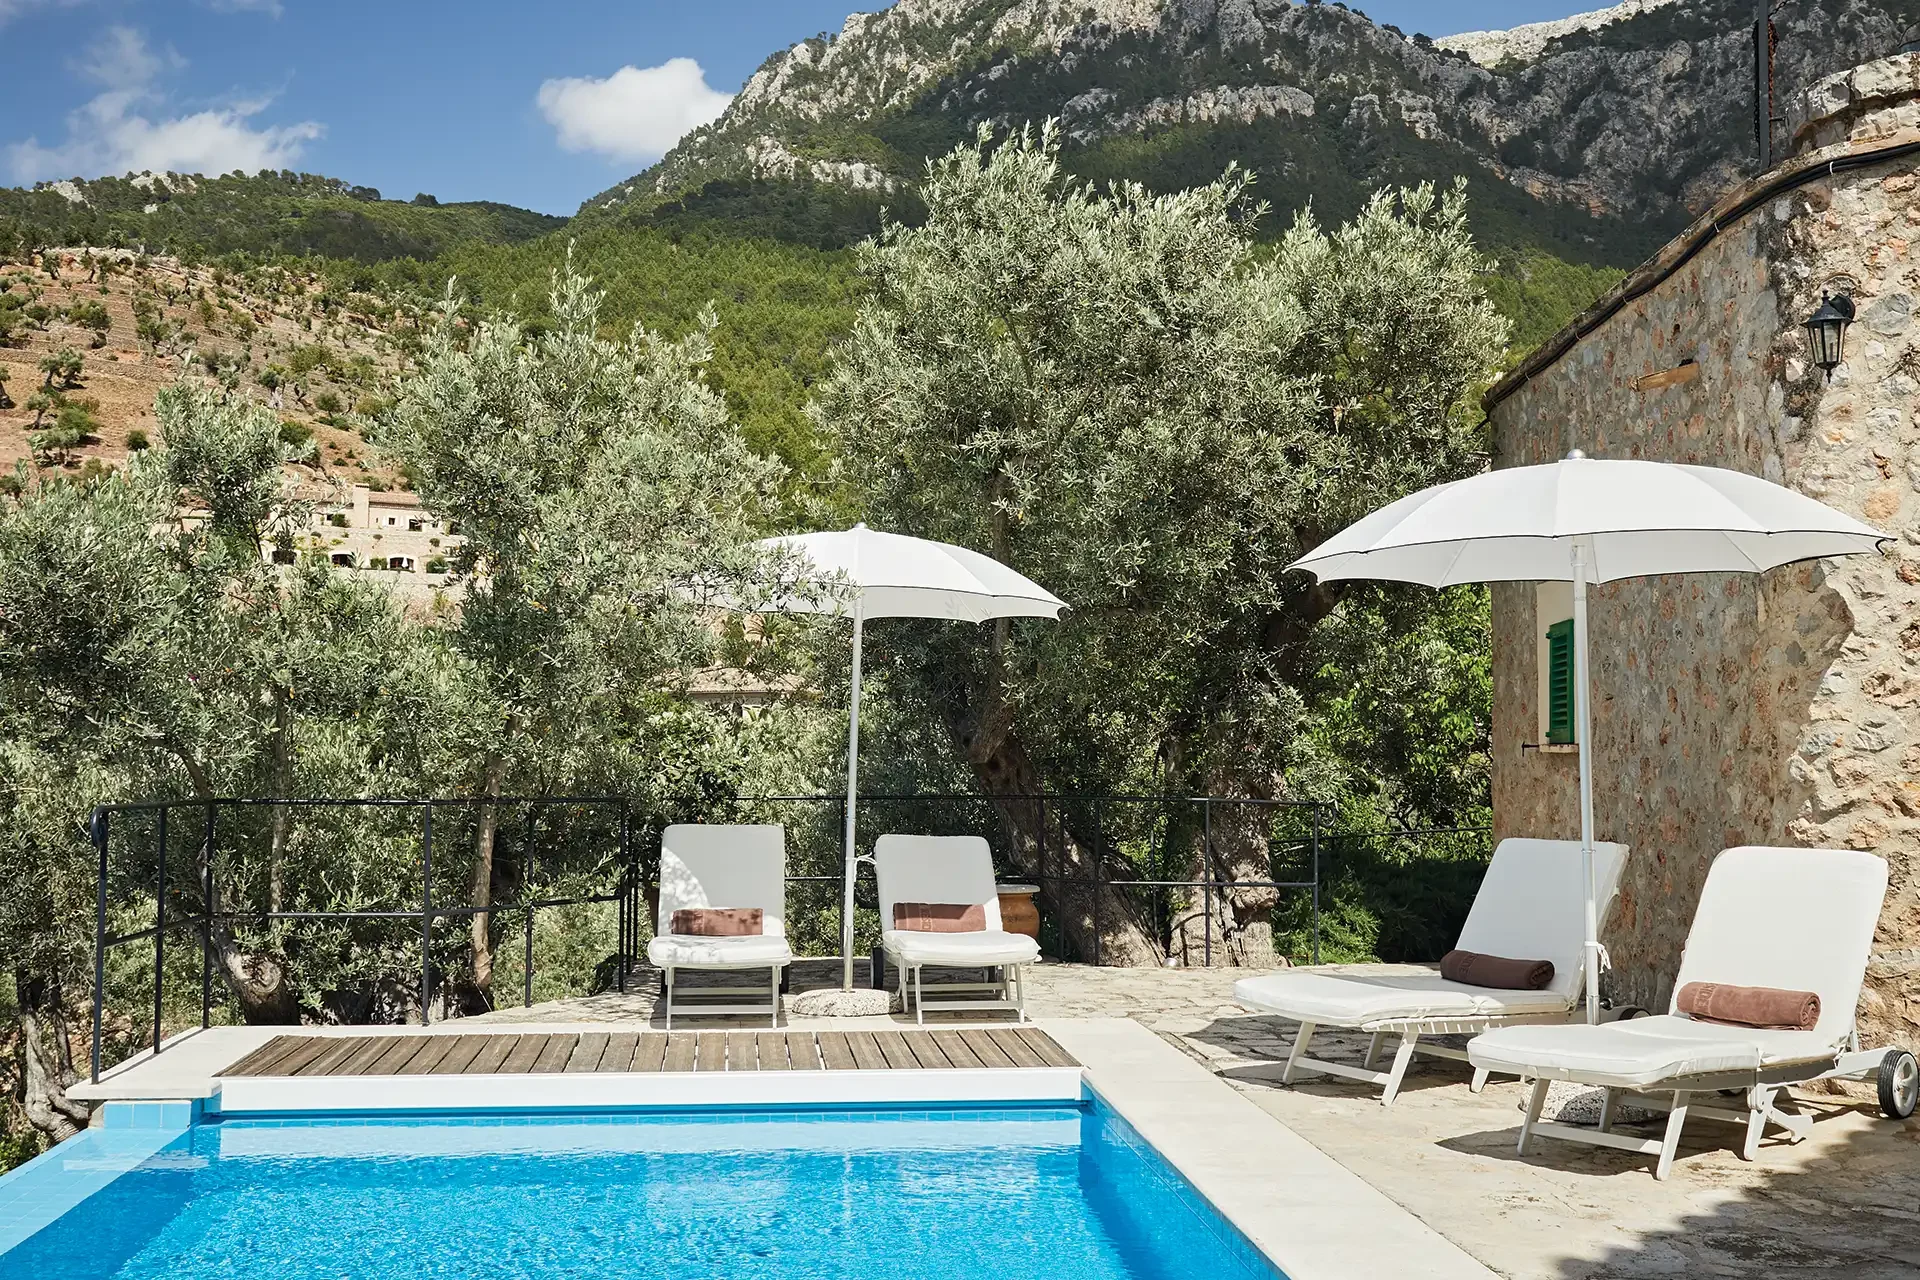 Pool einer Luxusfinca auf Mallorca